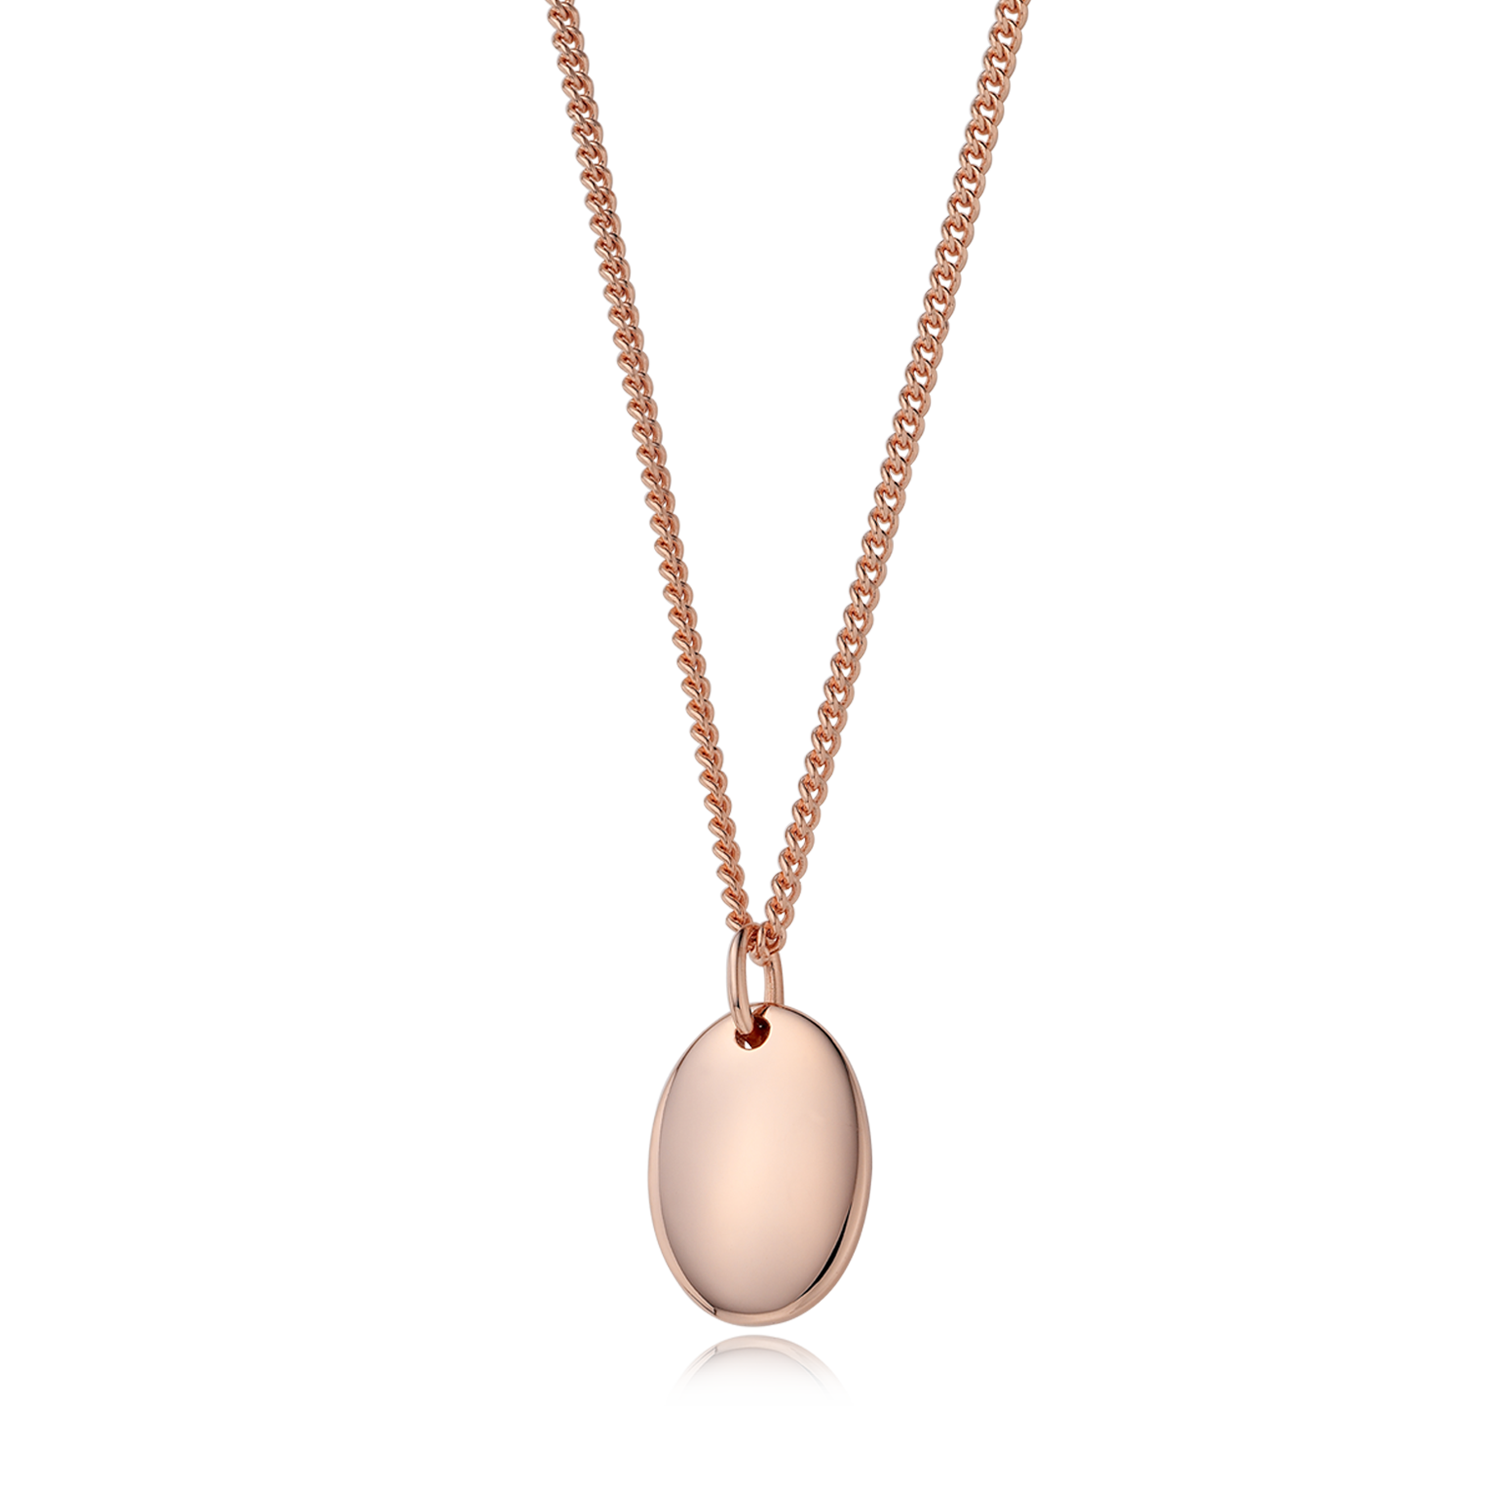 Kaiu Lady 14k Gold Oval Necklace